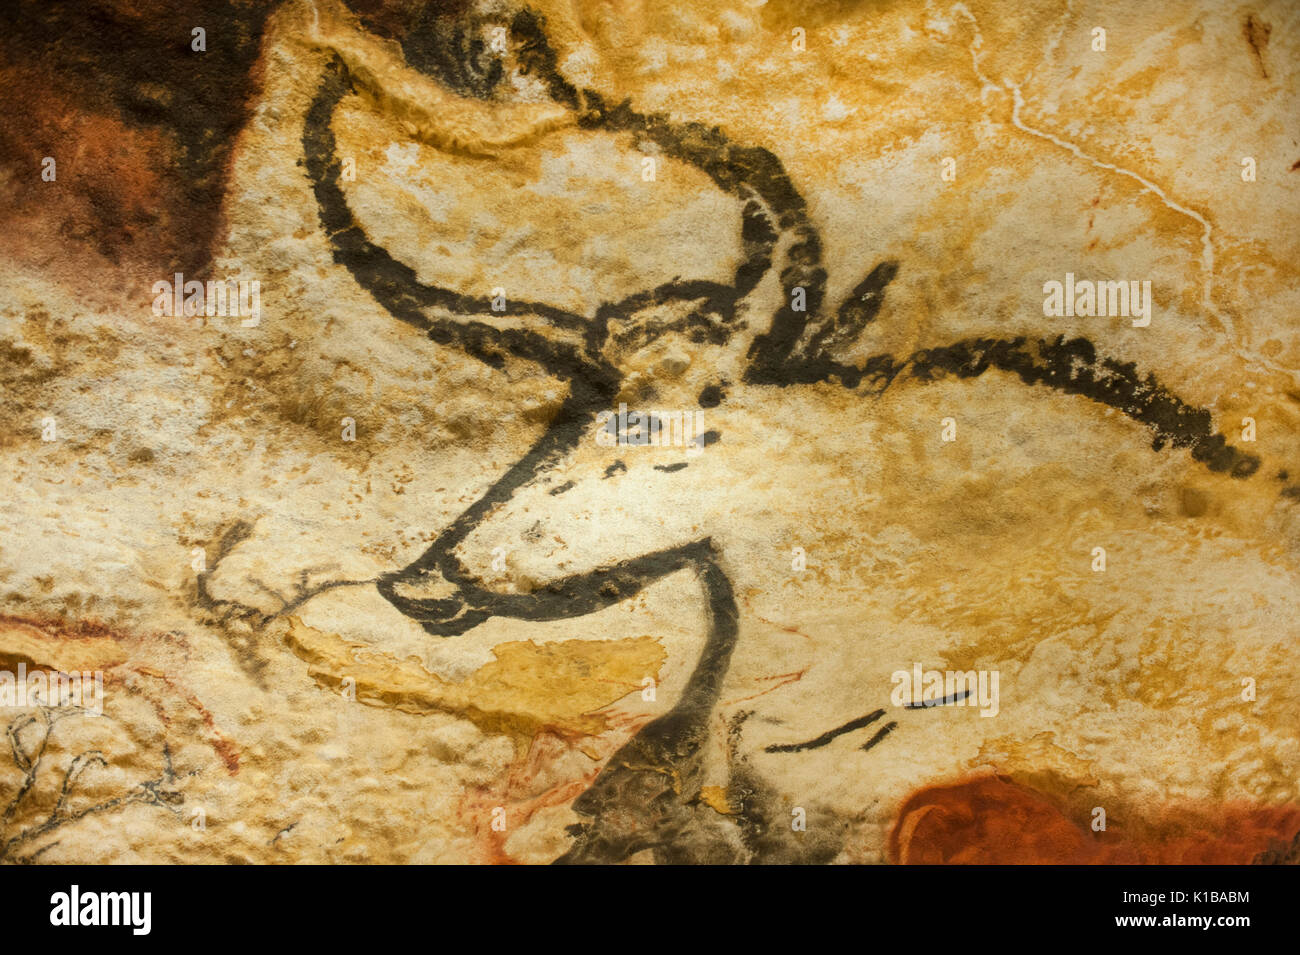 Peintures rupestres préhistoriques d'aujourd'hui disparu (auroch taureau sauvage), grottes de Lascaux IV, perigord, Montignac, Dordogne, France Banque D'Images